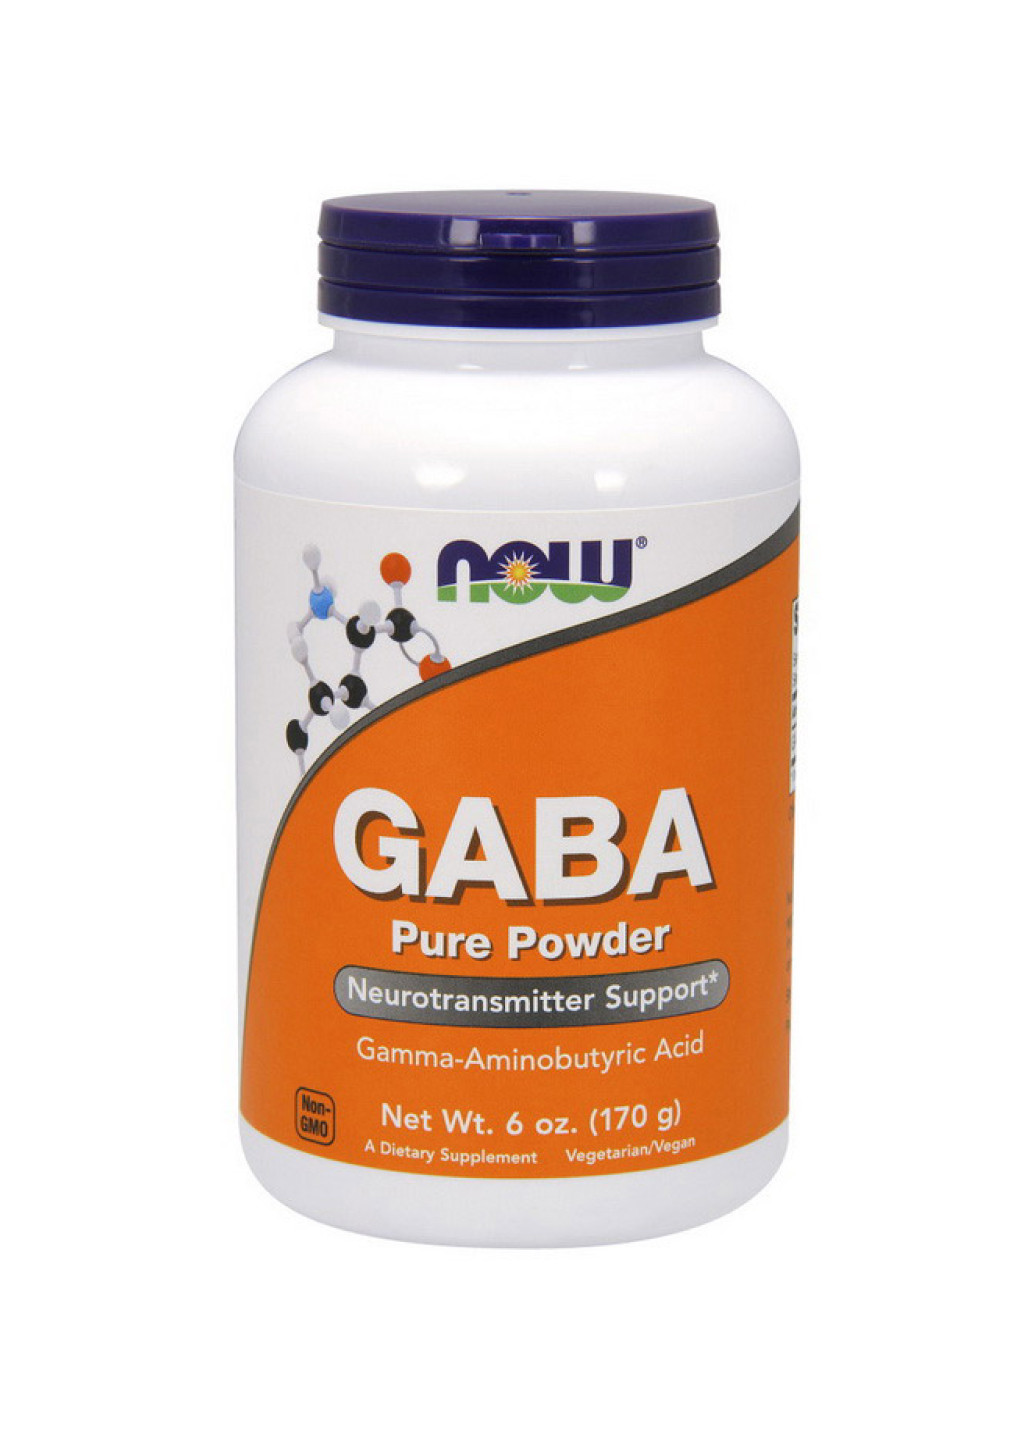 Гамма-аминомасляная кислота для нервной системы GABA PURE POWDER - 170g (6 OZ) Now Foods (251462989)